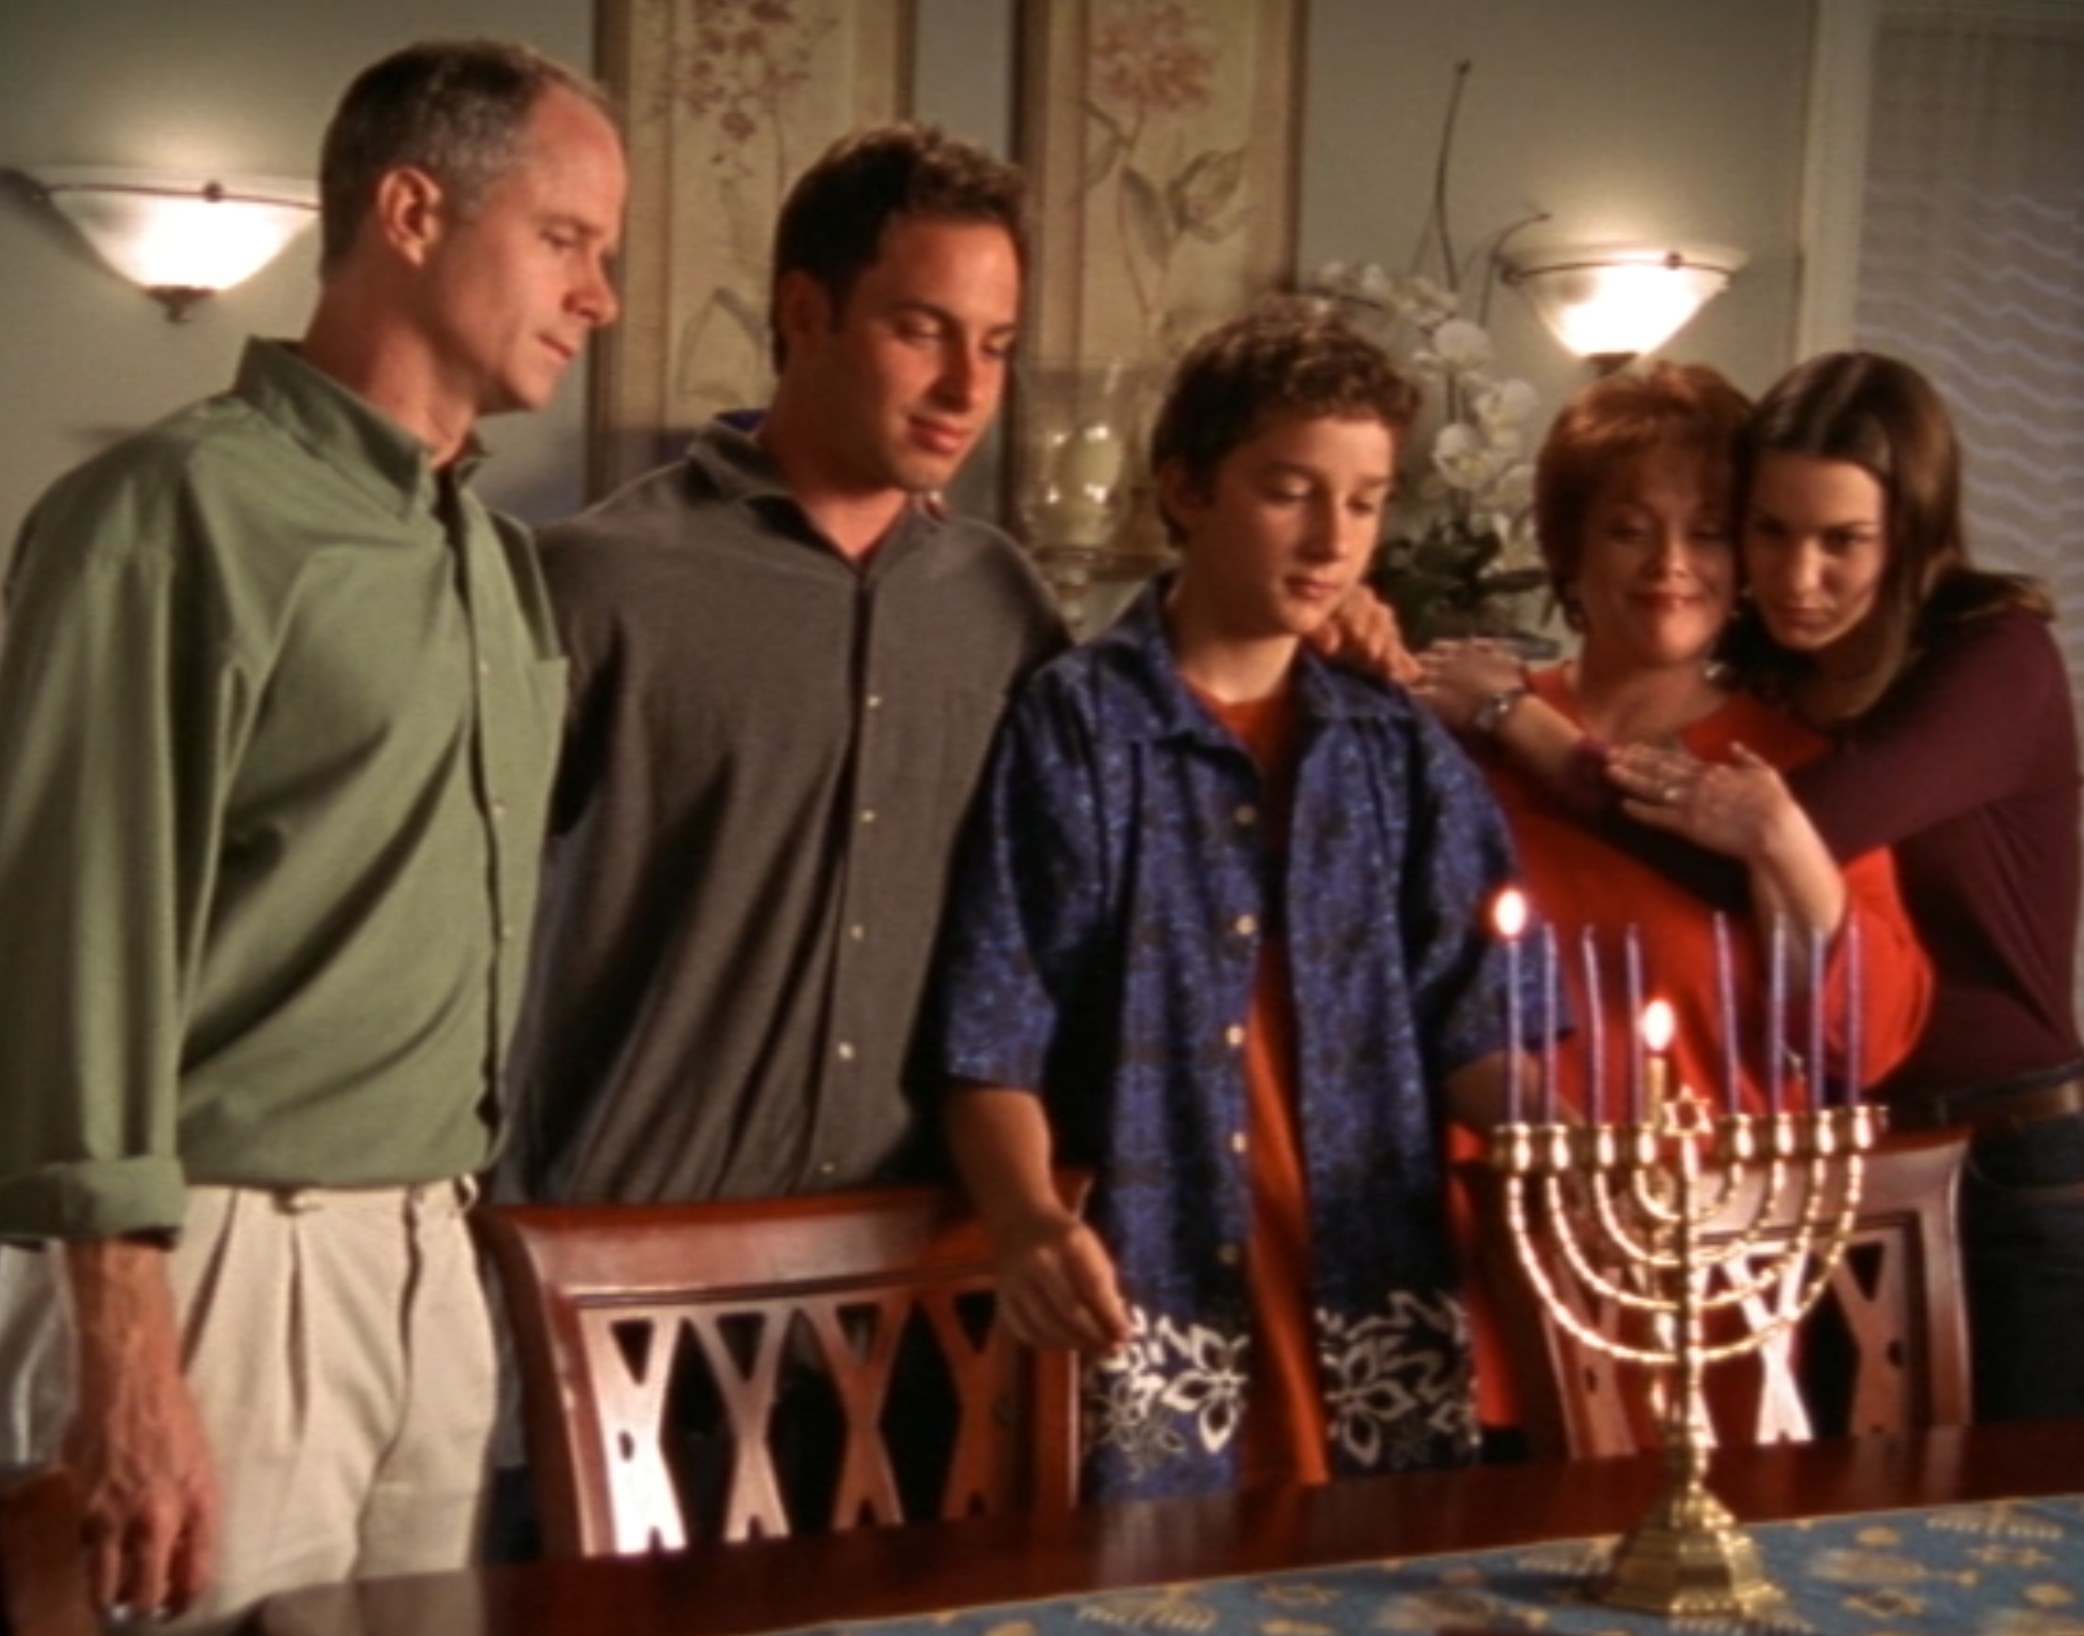 The Stevens Family gathers for a menorah lighting to celebrate Hanukkah in &quot;Even Stevens&quot;